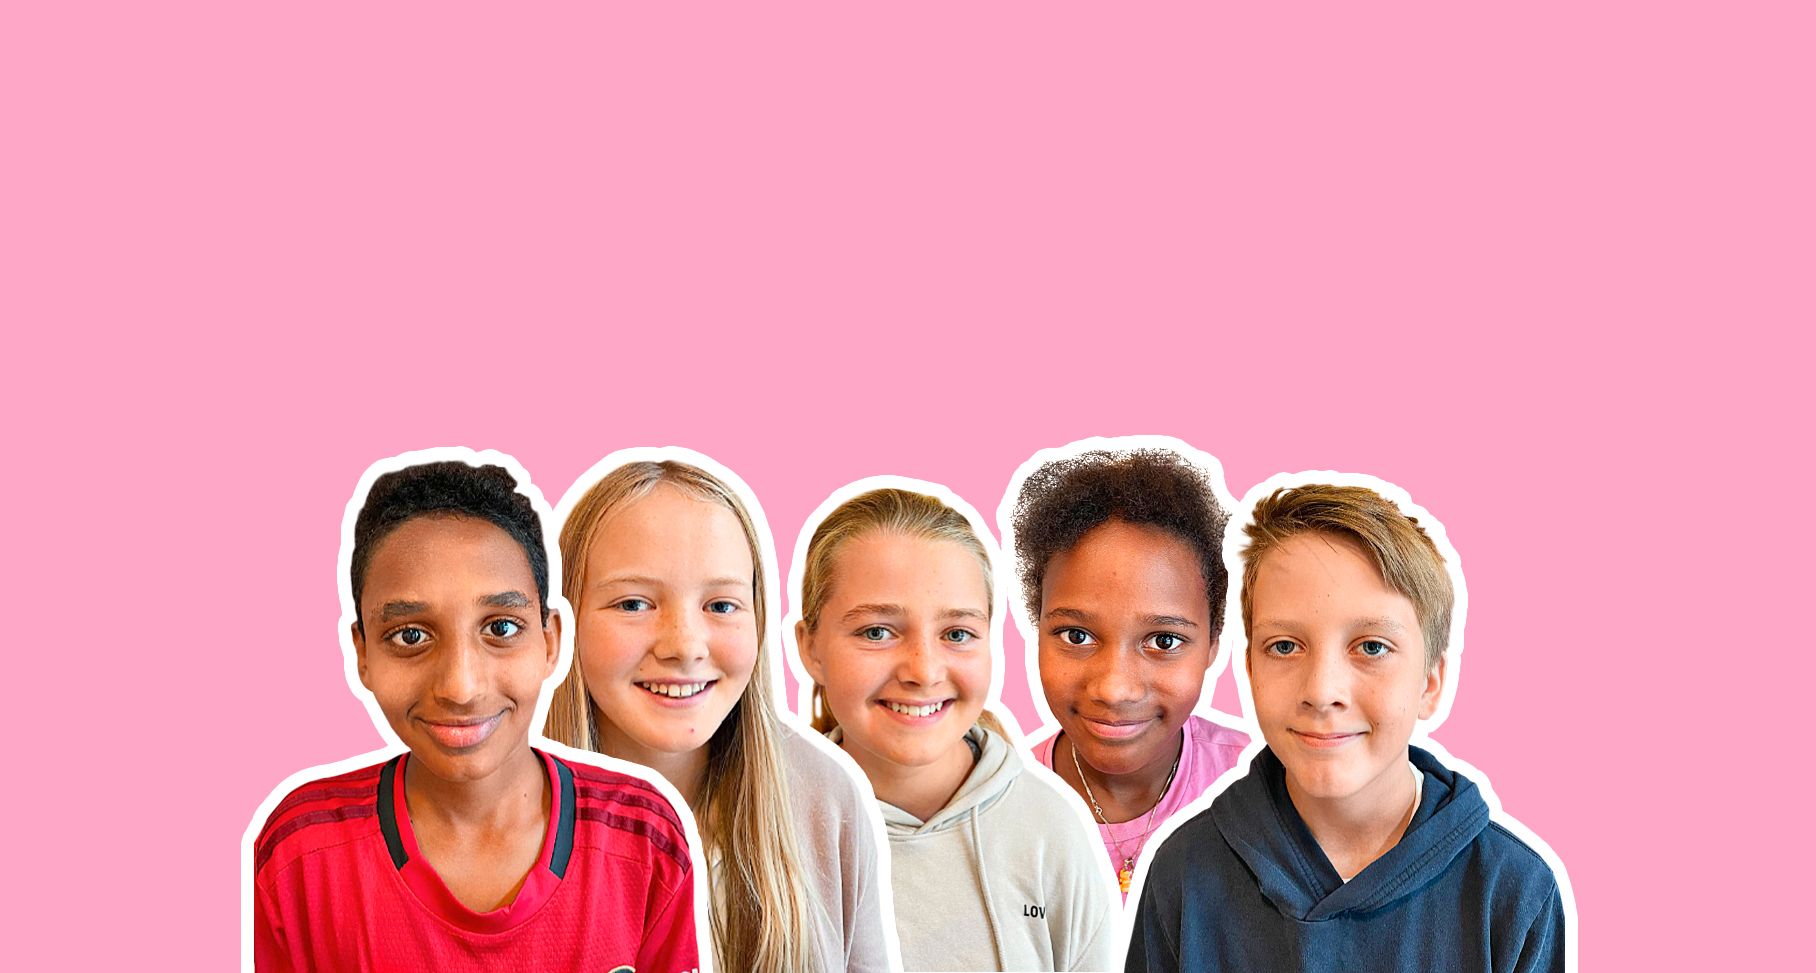 Fem barn er klippet ut og plassert på en rosa bakgrunn, med en hvit bord rundt, så de til sammen er en fotomontasje. 